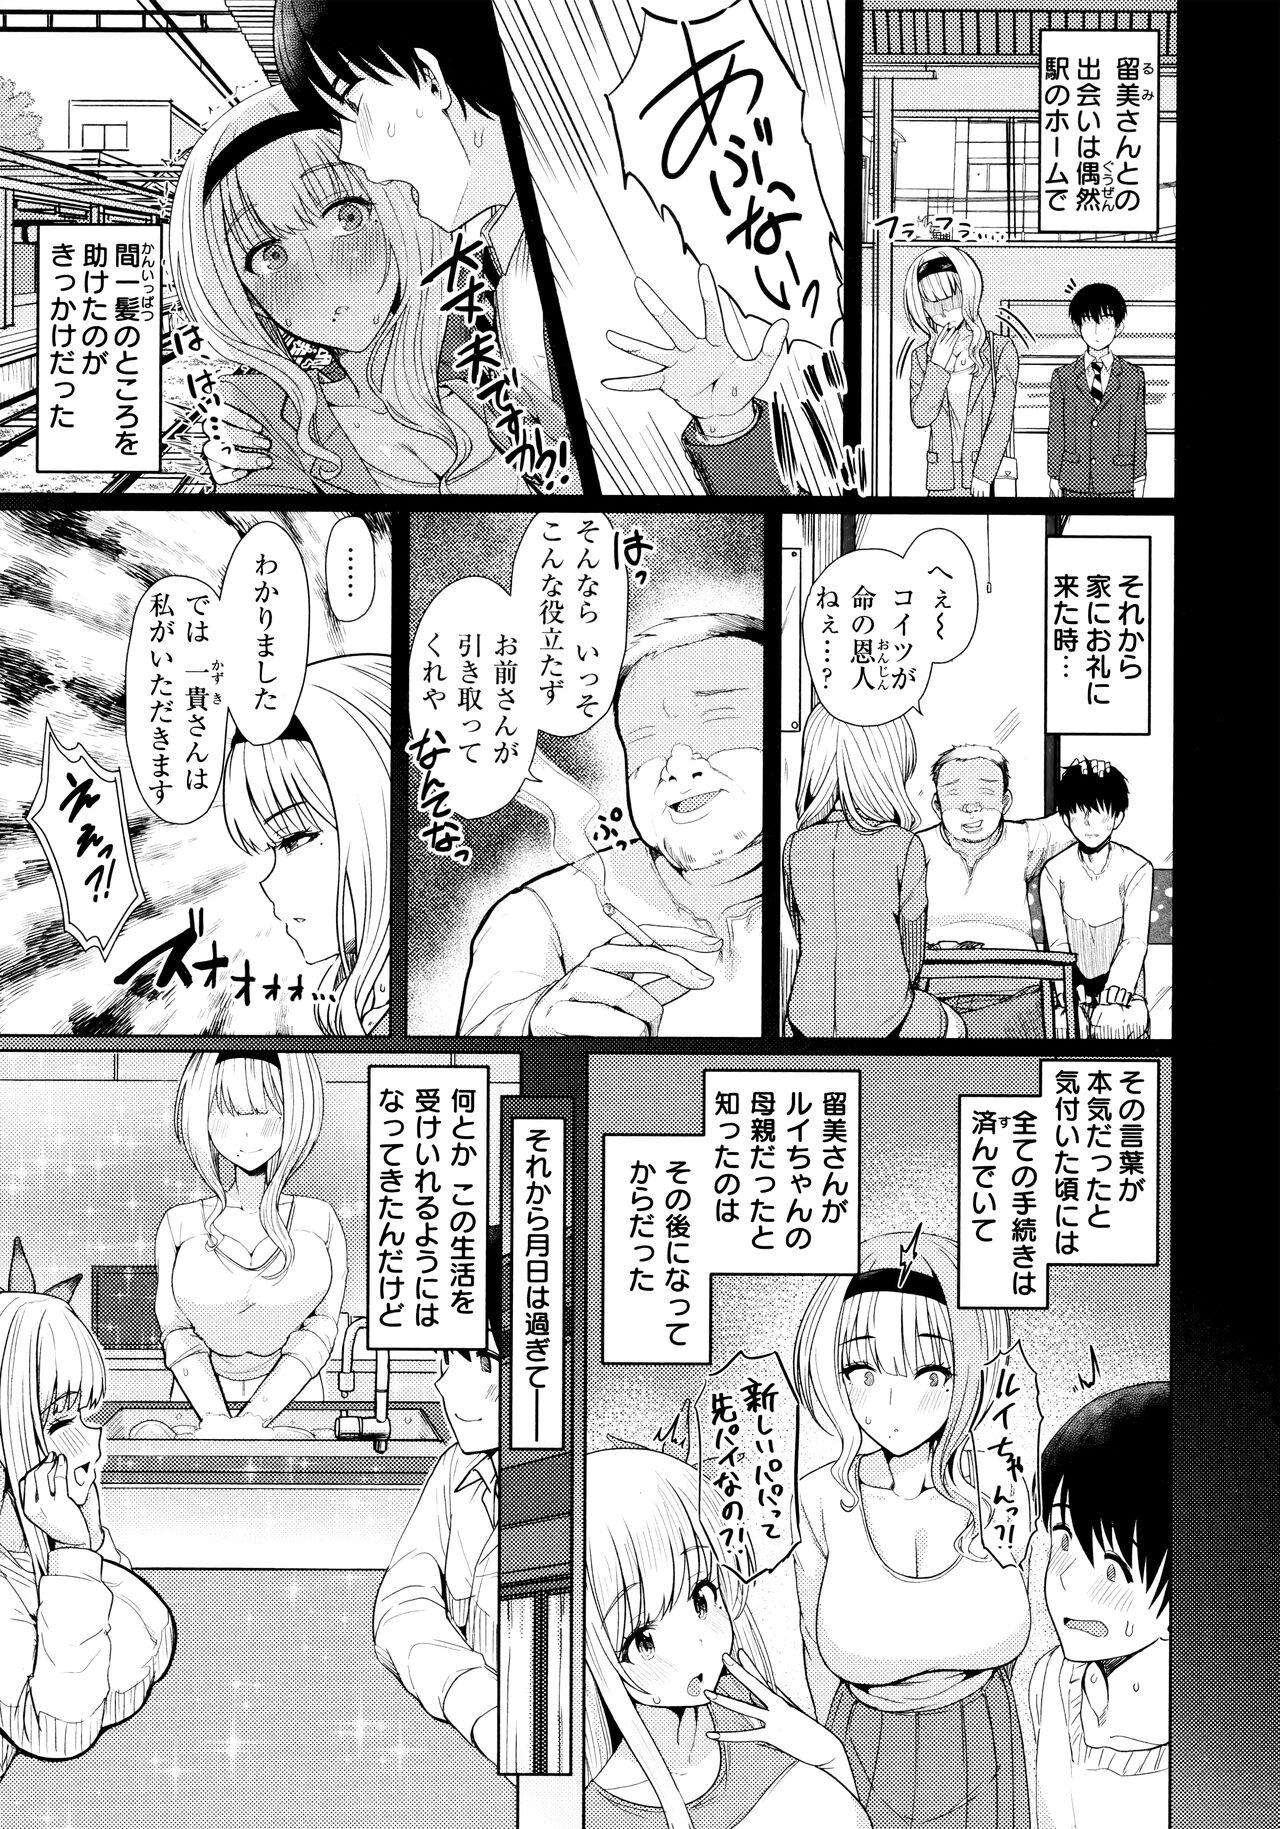 Kashima Nukunuku Seikatsu - Life Full of Sex + Melonbooks Kounyu Tokuten + Toranoana Kounyu Tokuten Free Amateur Porn - Page 7